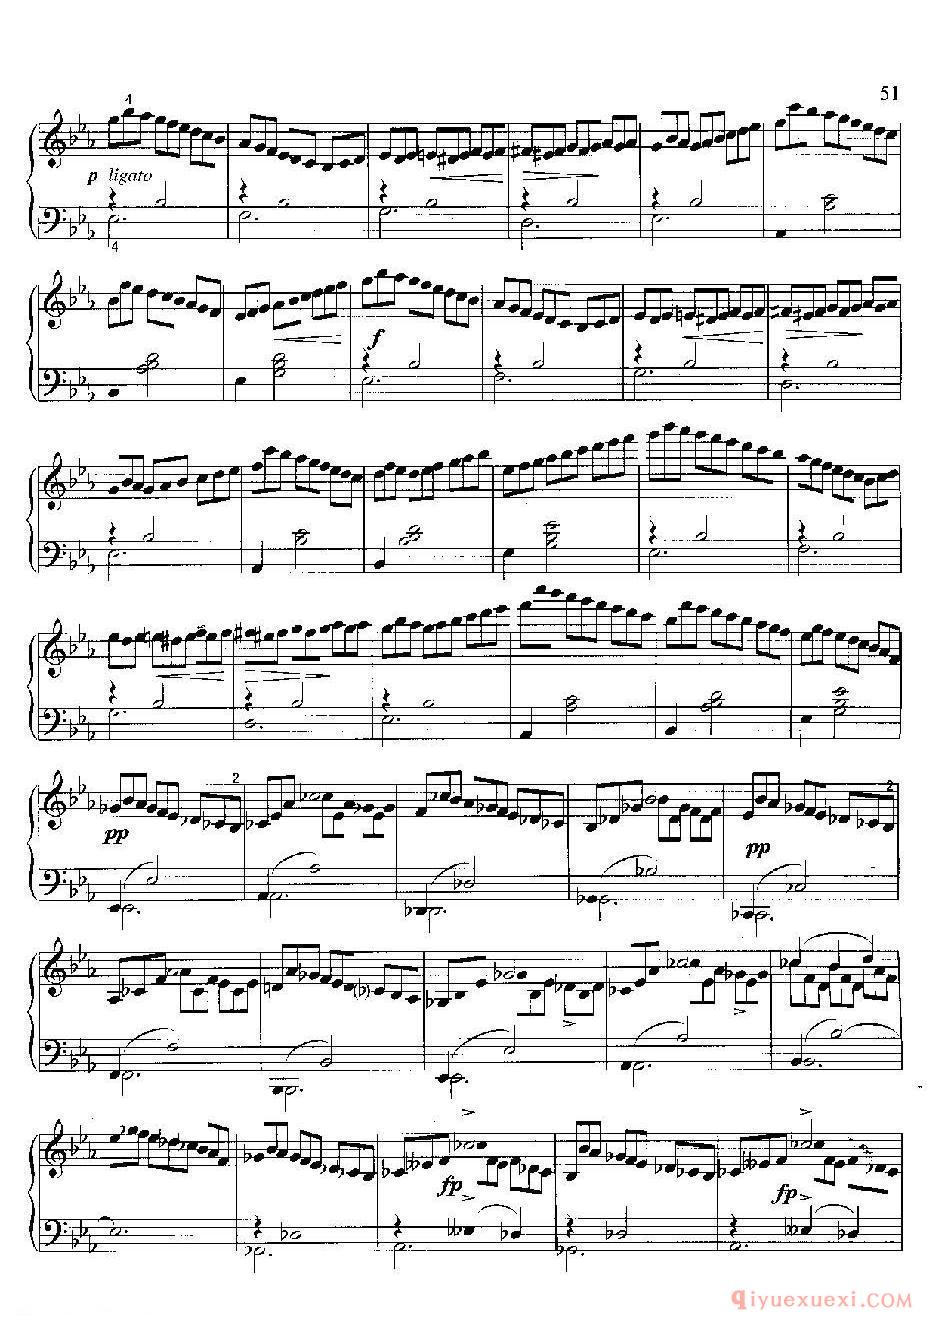 即兴曲（第2首）( lmpromptu II ，Op.90-2)舒柏特